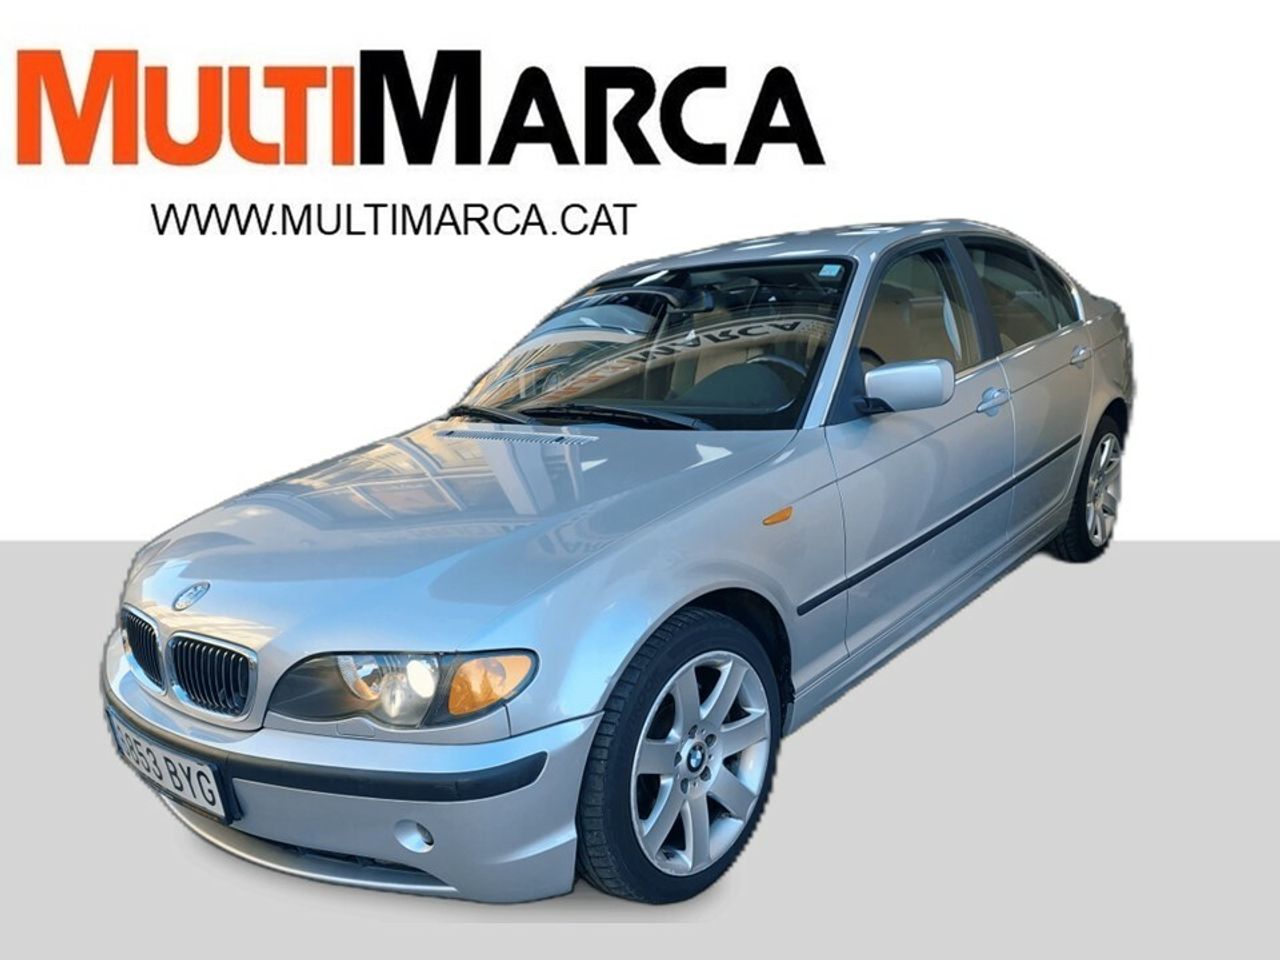 BMW Serie 3 ocasión segunda mano 2002 Diésel por 5.900€ en Girona